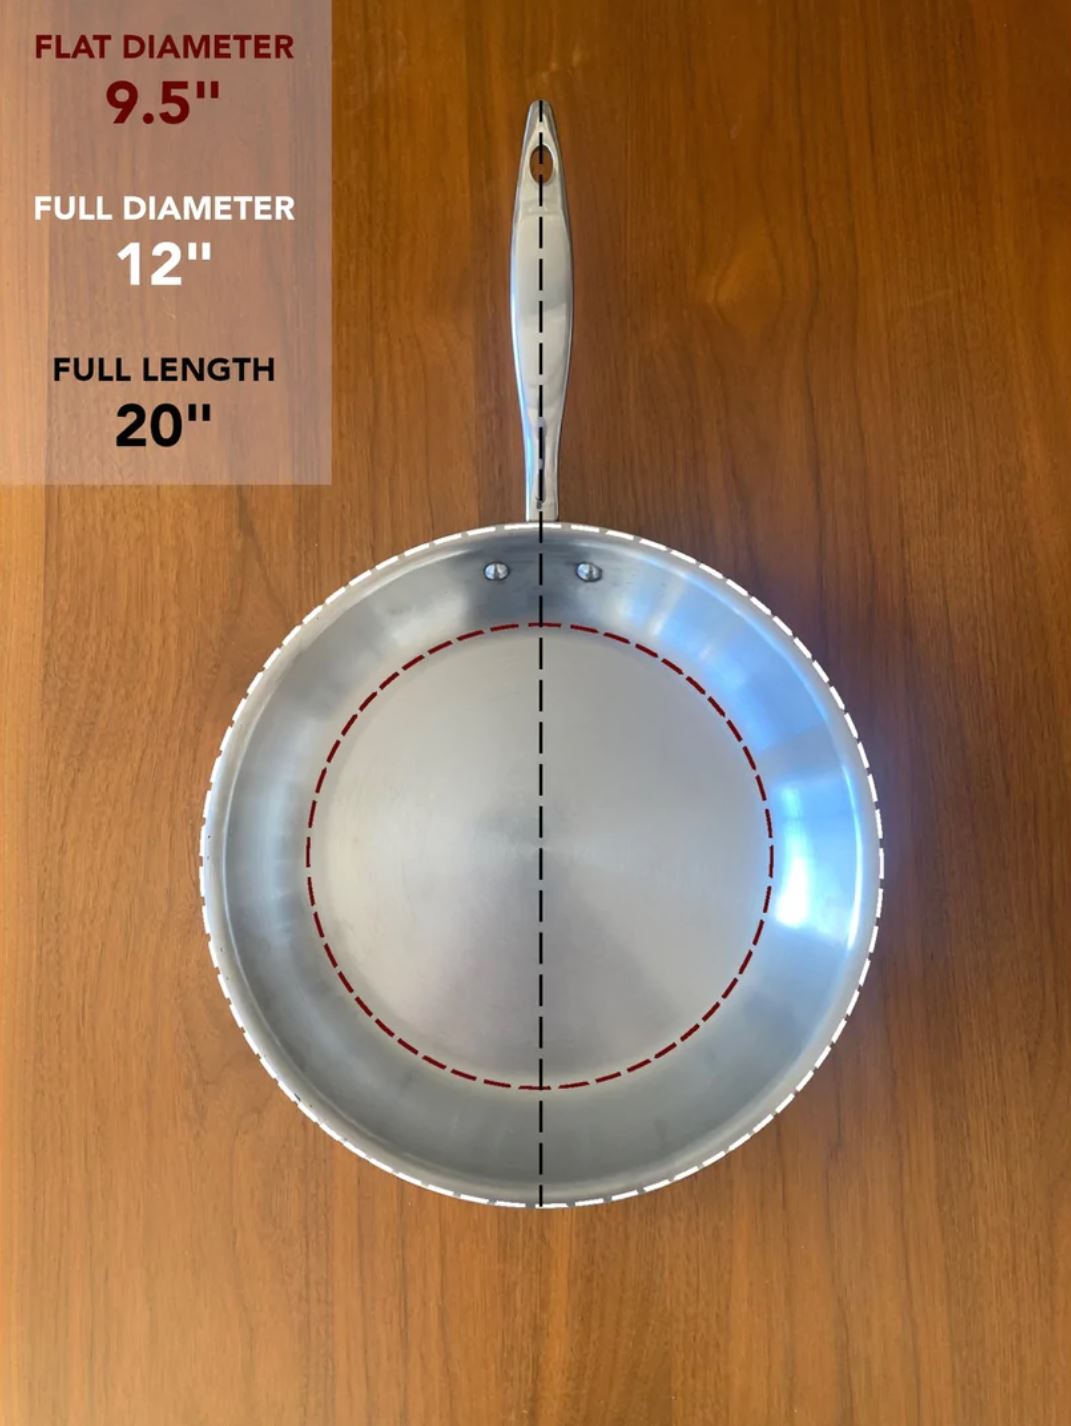 12 Diameter Stainless Steel Frying Pan